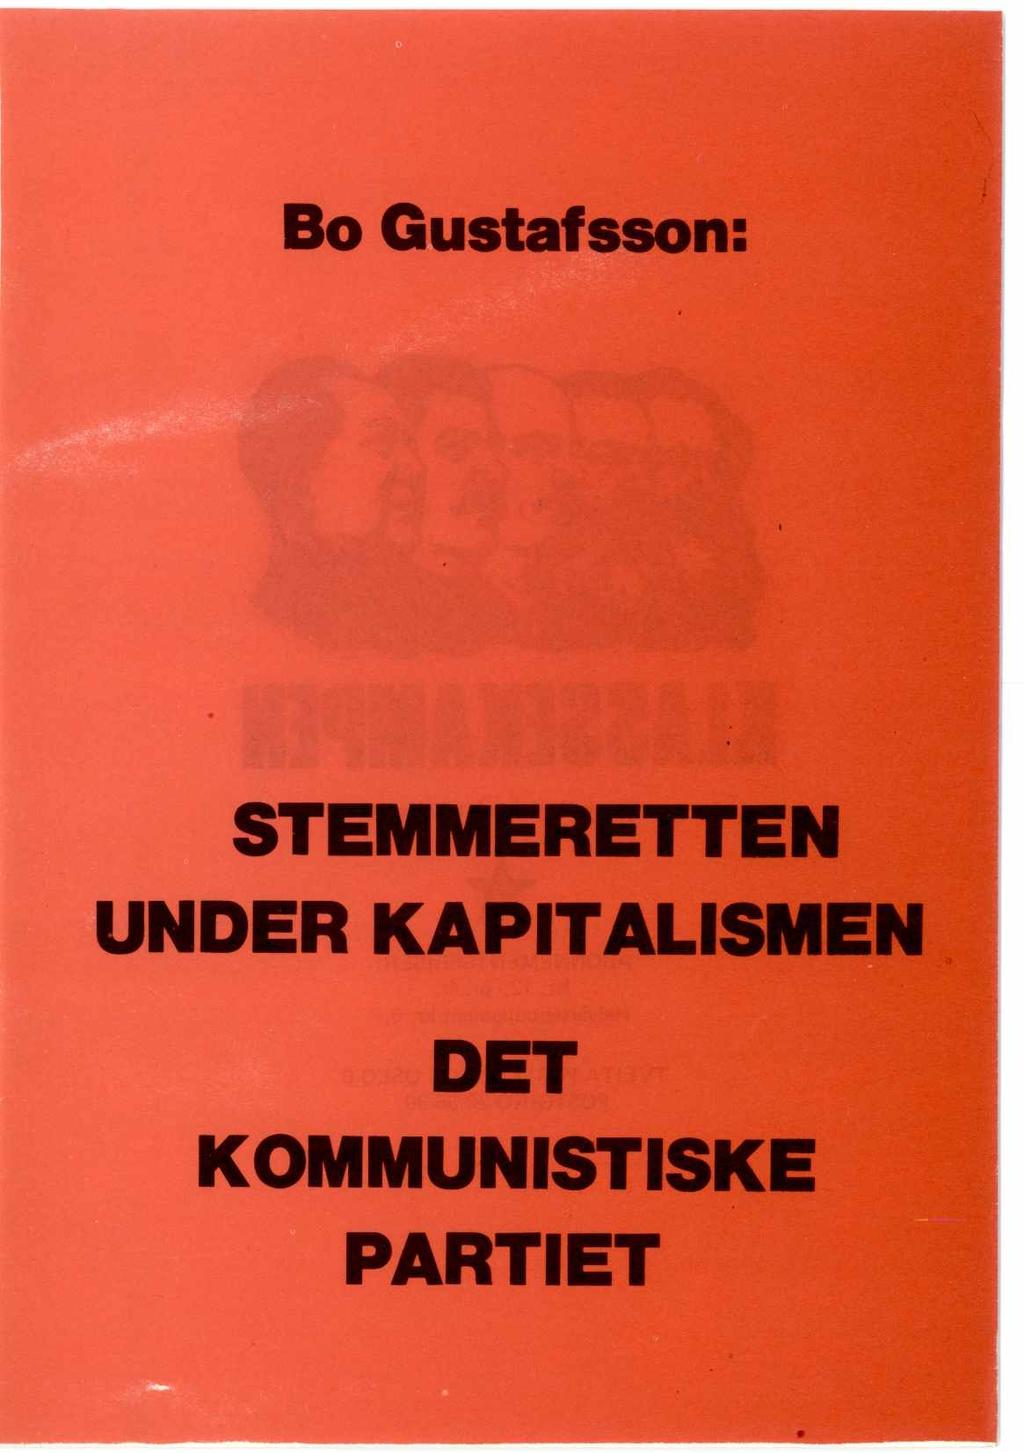 Bo Gustafsson: STEMMERETTEN UNDER